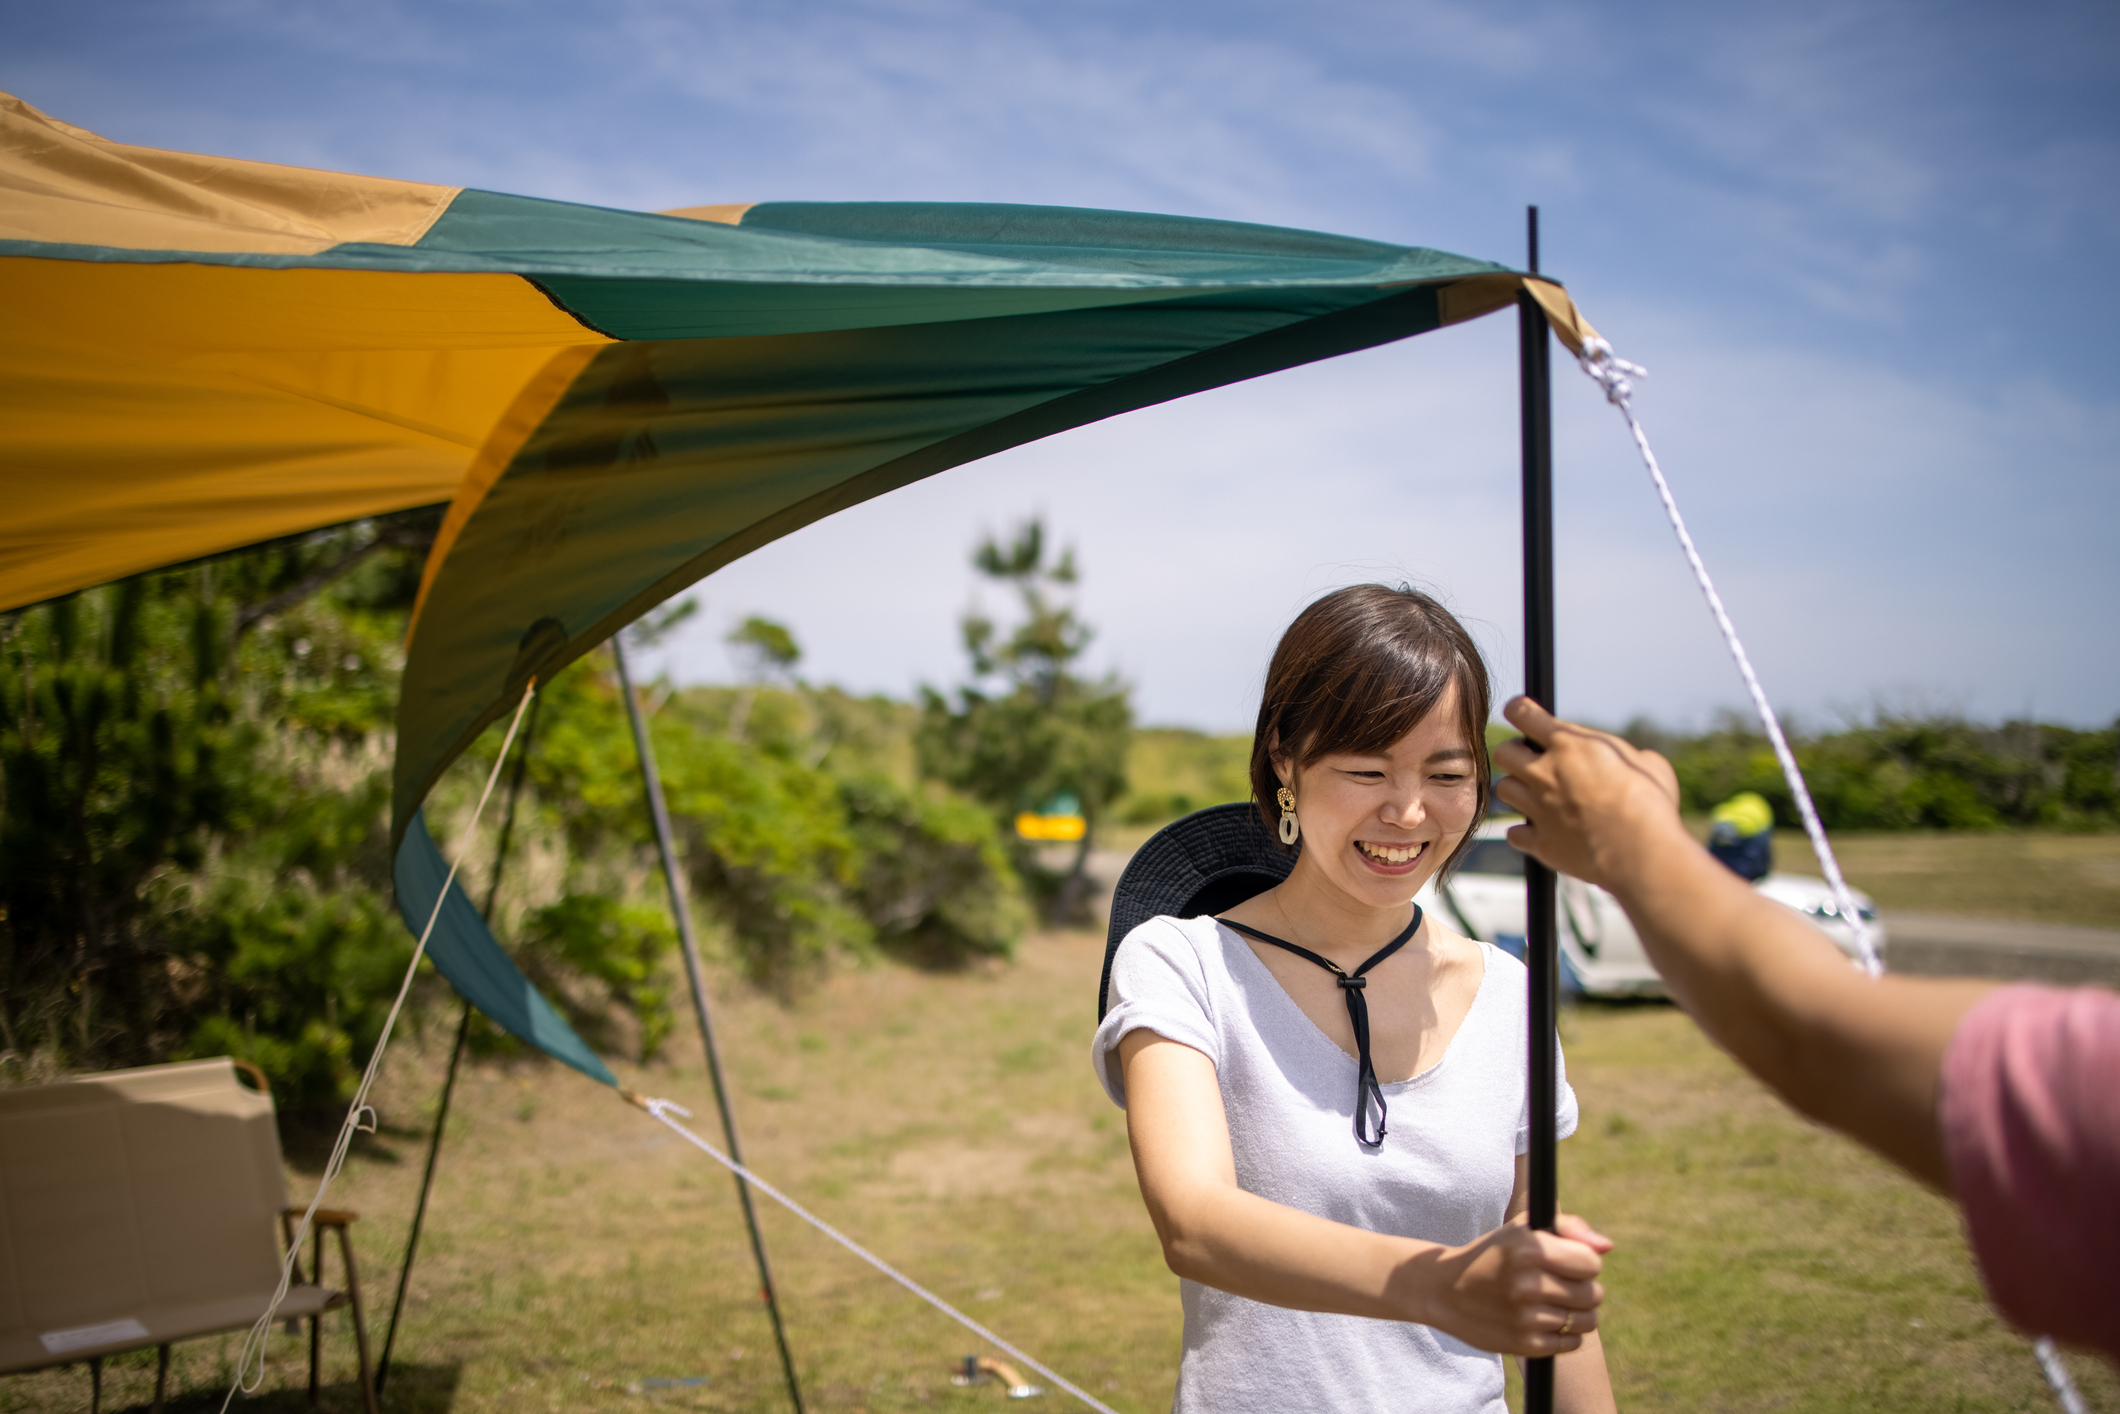 アウトレット☆送料無料 自在金具 ロープライナー キャンプ テント タープ ロープ貼り 組み立て